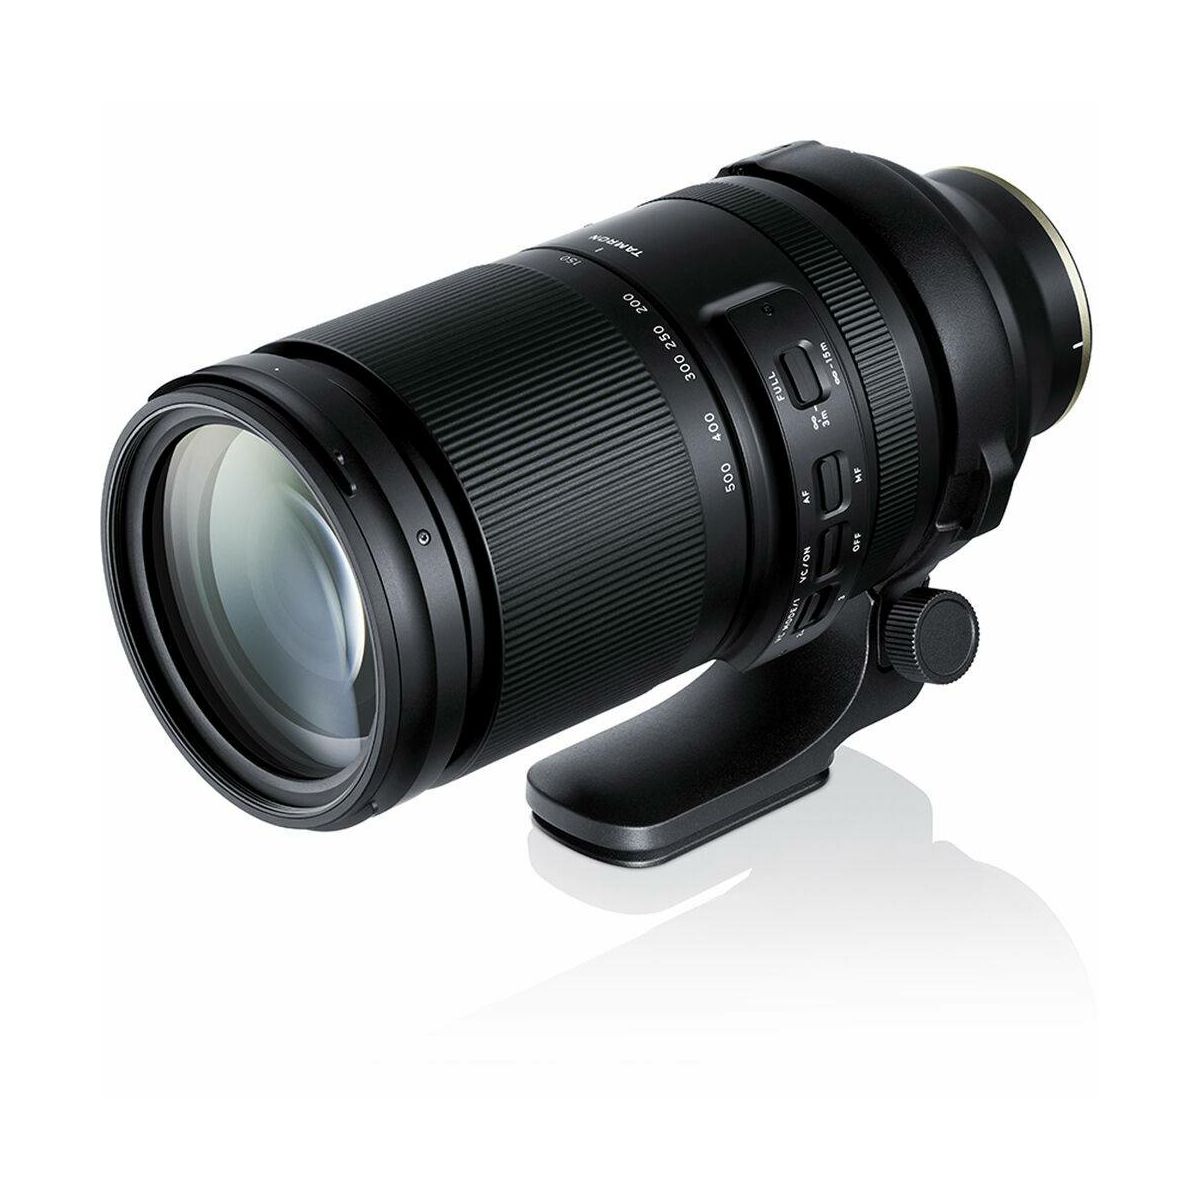 Tamron 150-500mm f/5-6.7 Di III VC VXD telefoto objektiv za Sony E-mount (A057S)